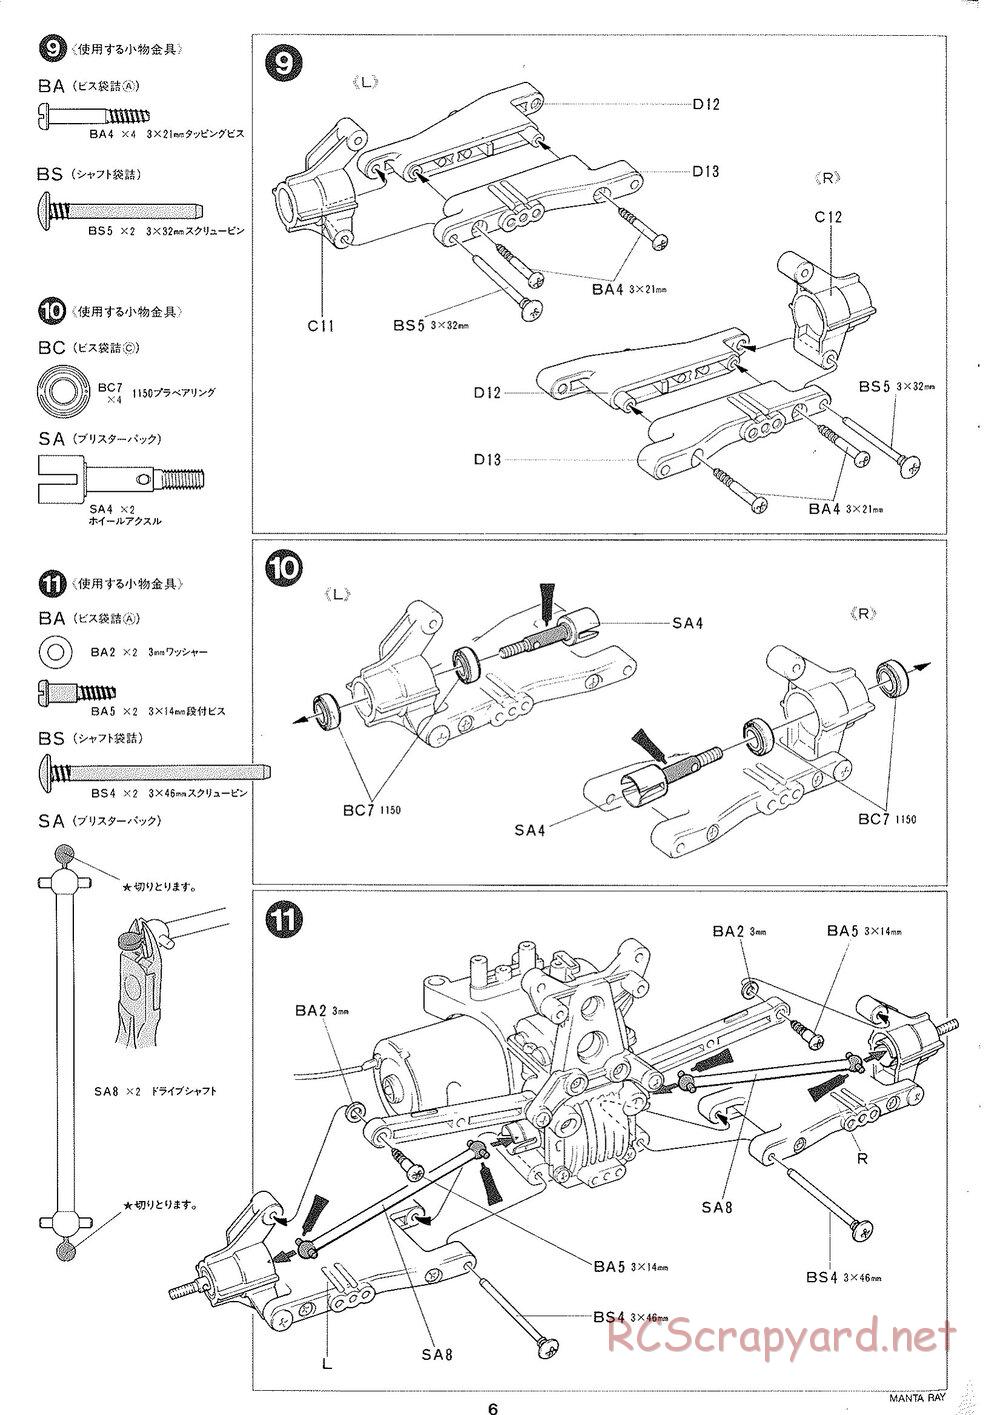 Tamiya - Manta Ray 2005 - DF-01 Chassis - Manual - Page 7